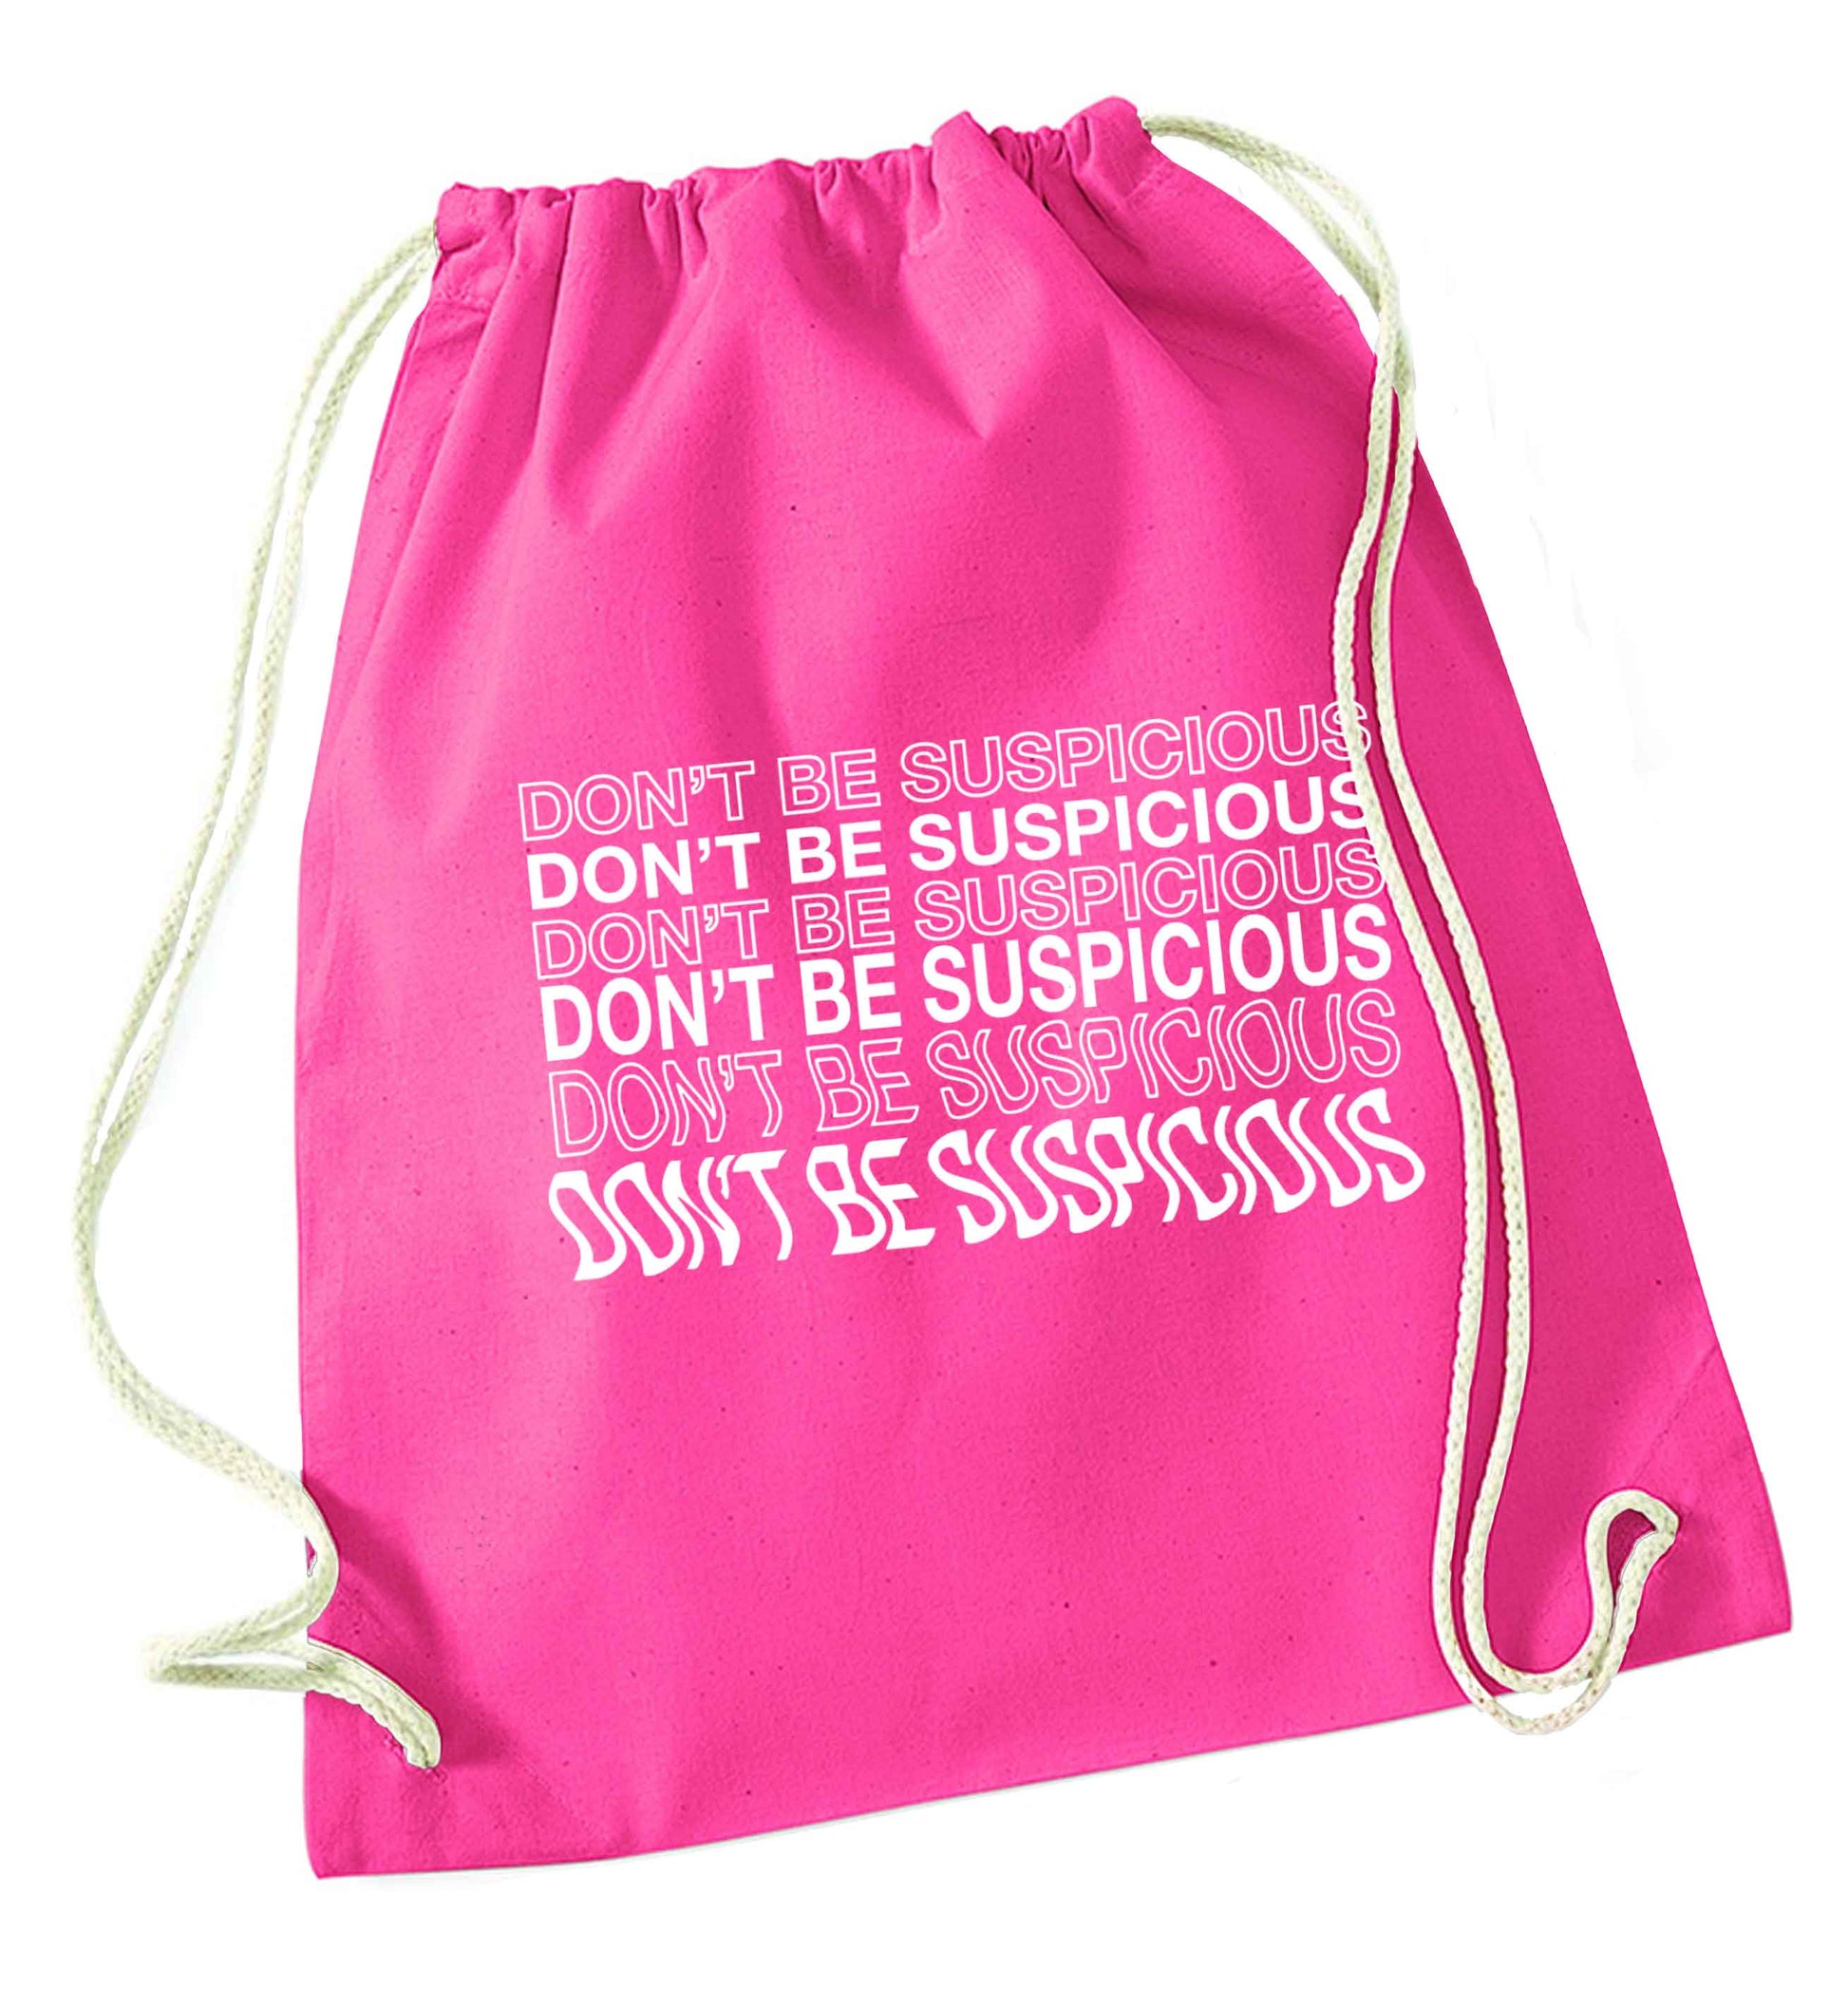 Viral funny memes! Designs for the gen z generation!  pink drawstring bag